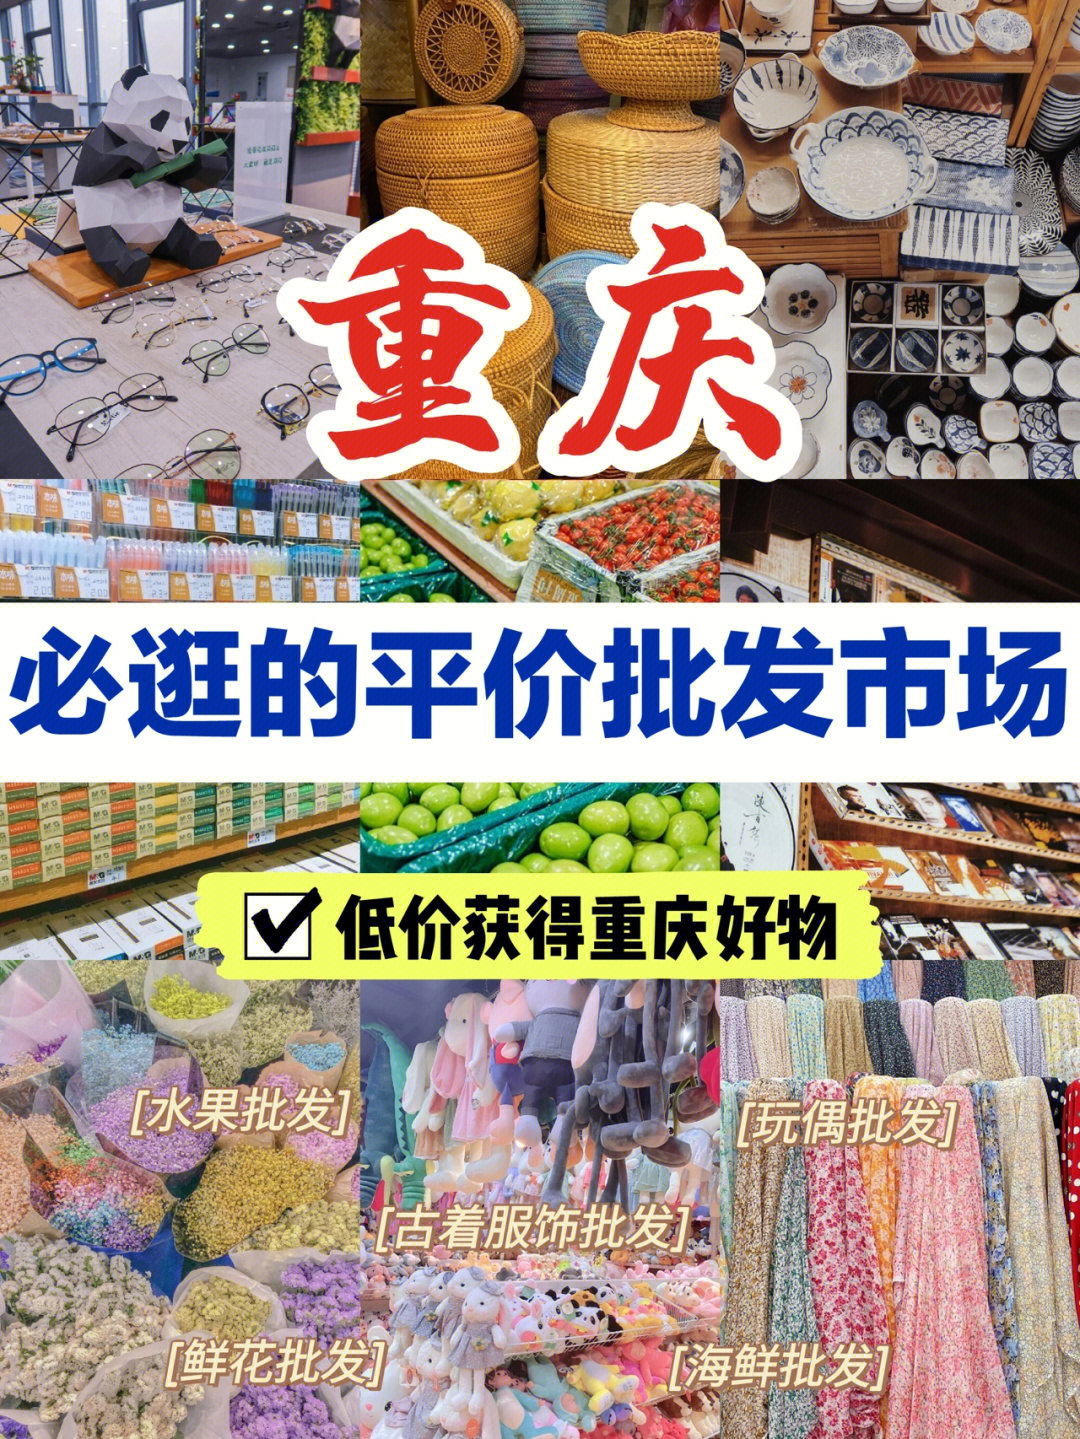 16615朝天门布料批发市场99地址:新重庆国际小商品批发中心1